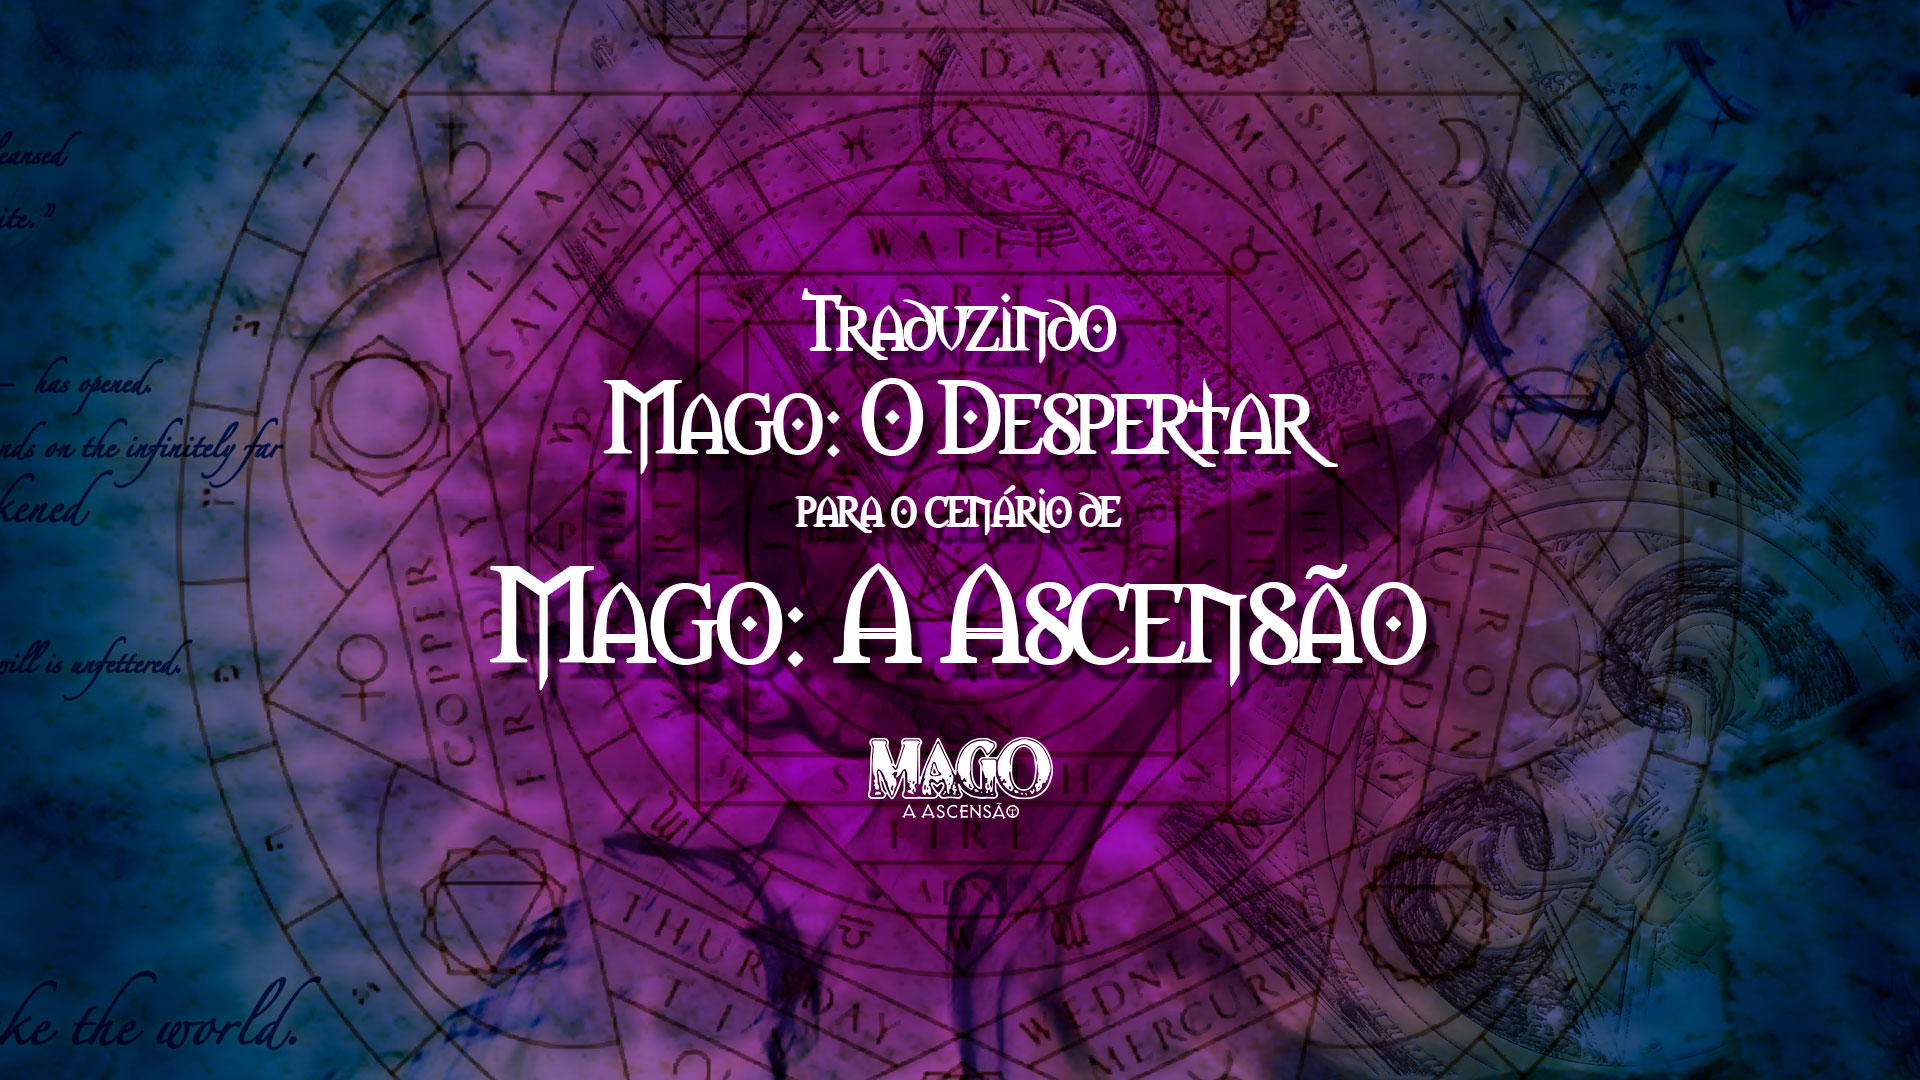 Capa do post escrito: Traduzindo Mago: O Despertar para o cenário de Mago: A Ascensão.